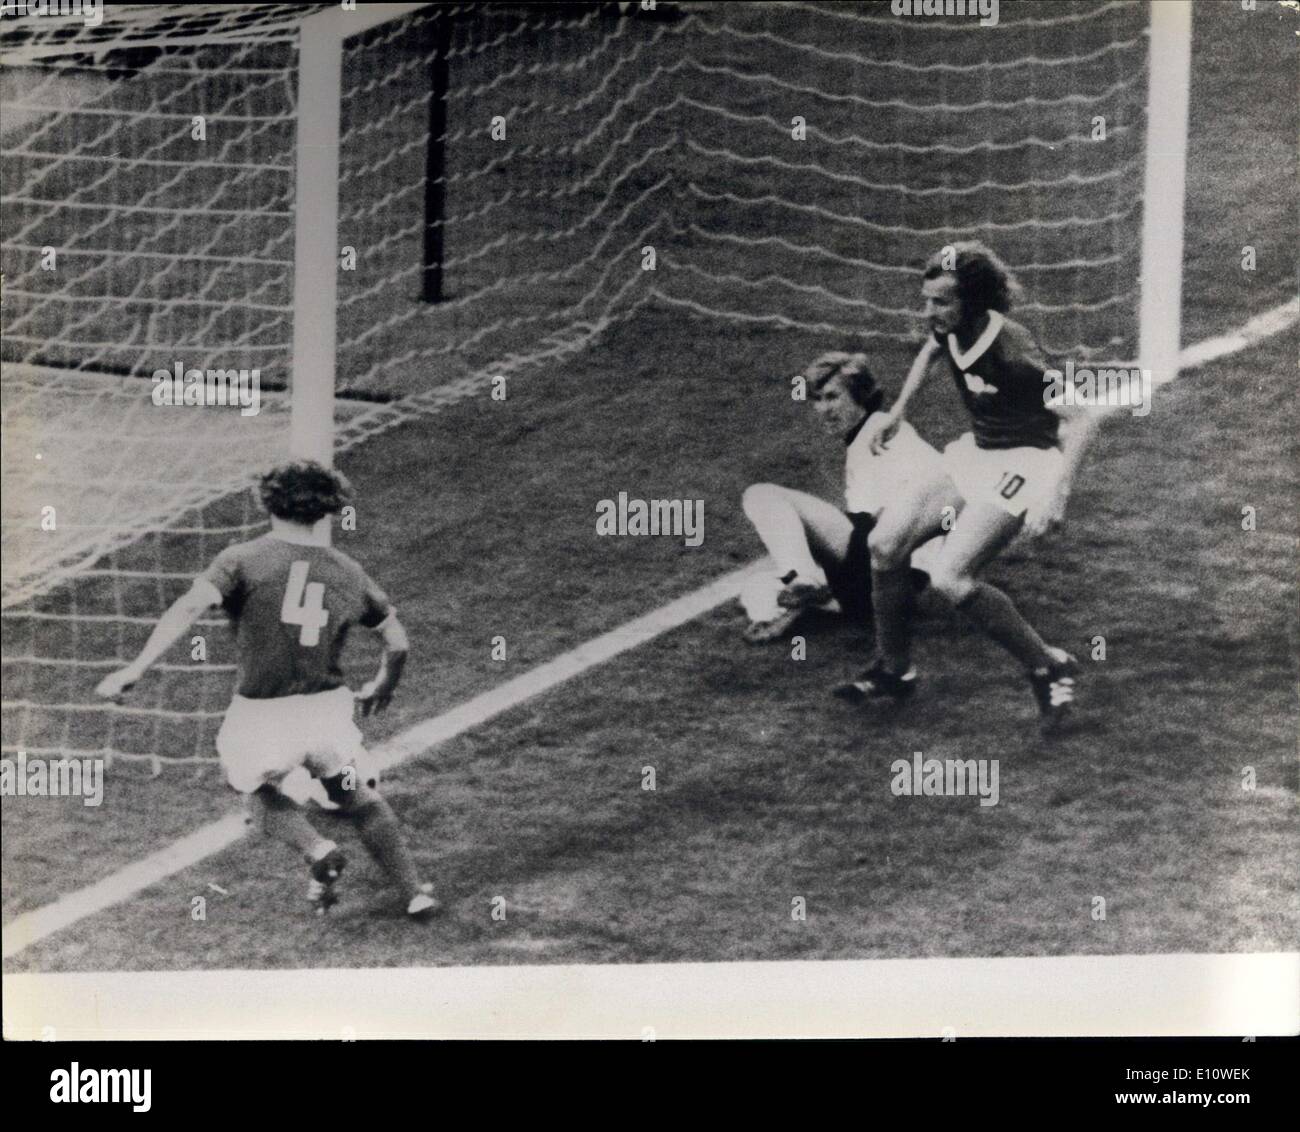 Juin 26, 1974 - L'Allemagne bat l'Allemagne de l'Ouest 1-0 : l'Allemagne de l'Est a battu l'Allemagne de l'Ouest par 1-0 dans leur match de Coupe du Monde à Hambourg samedi dernier. photo montre le joueur allemand Weise (à gauche), empêche un but, regardé par ses coéquipiers Kreische (droite) et goalkeepr Croy. Banque D'Images